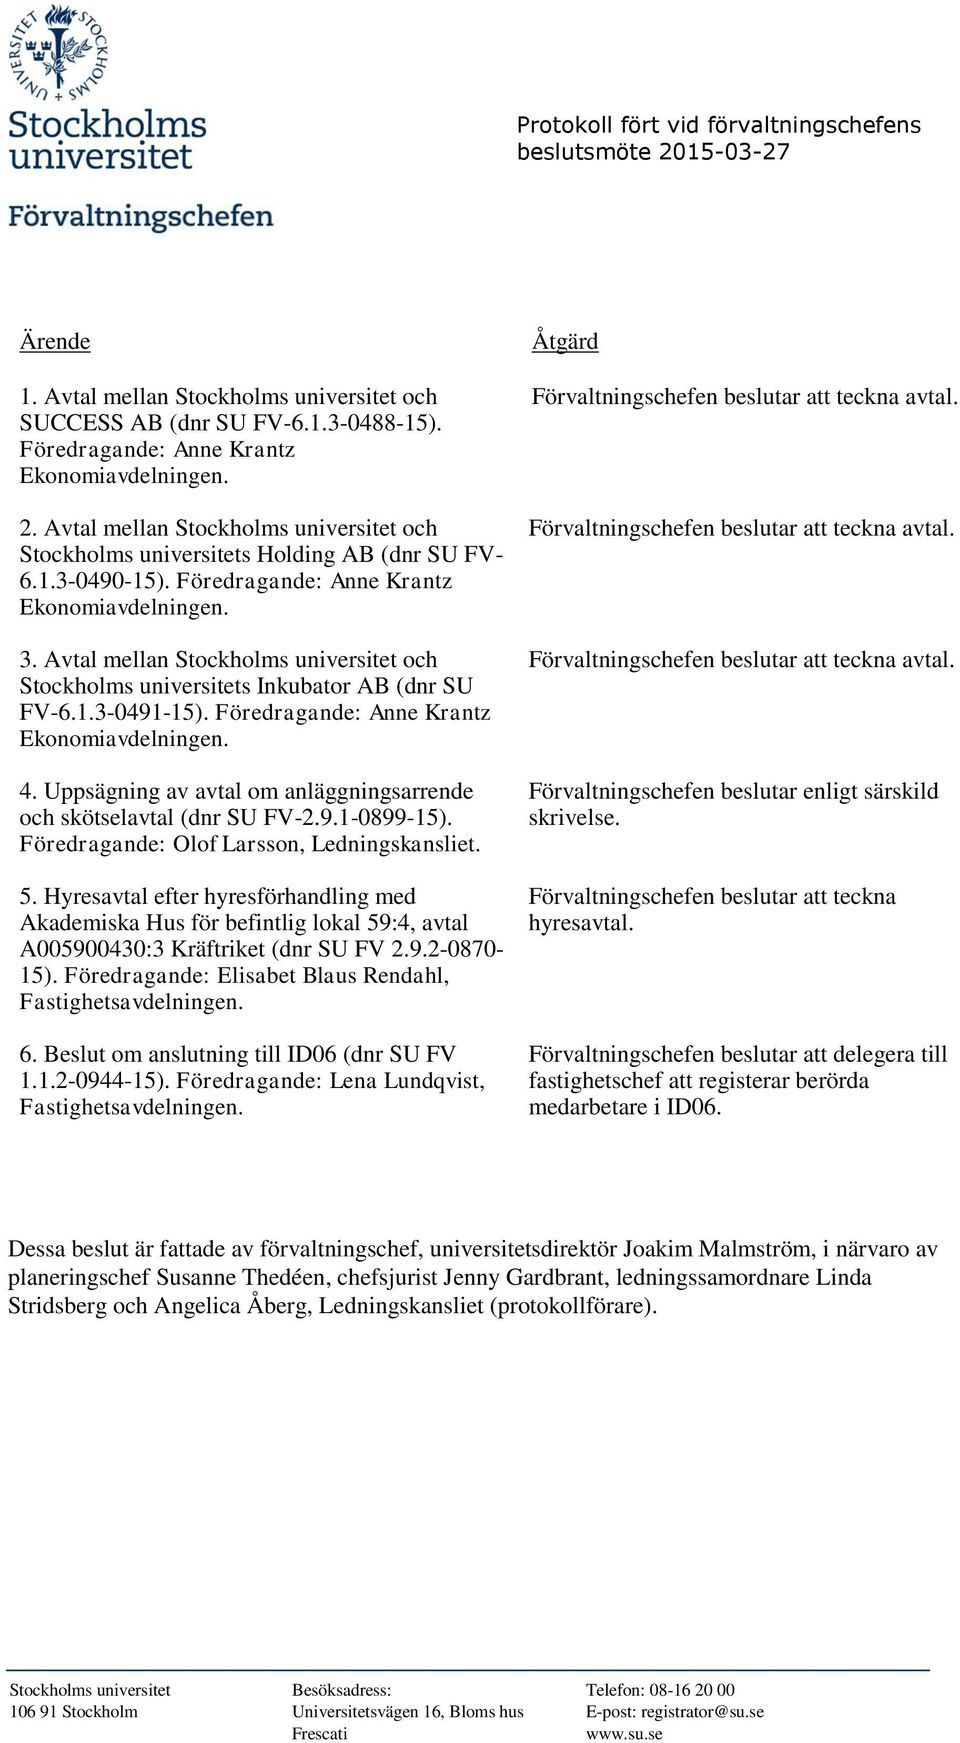 Avtal mellan Stockholms universitet och Stockholms universitets Inkubator AB (dnr SU FV-6.1.3-0491-15). Föredragande: Anne Krantz 4.